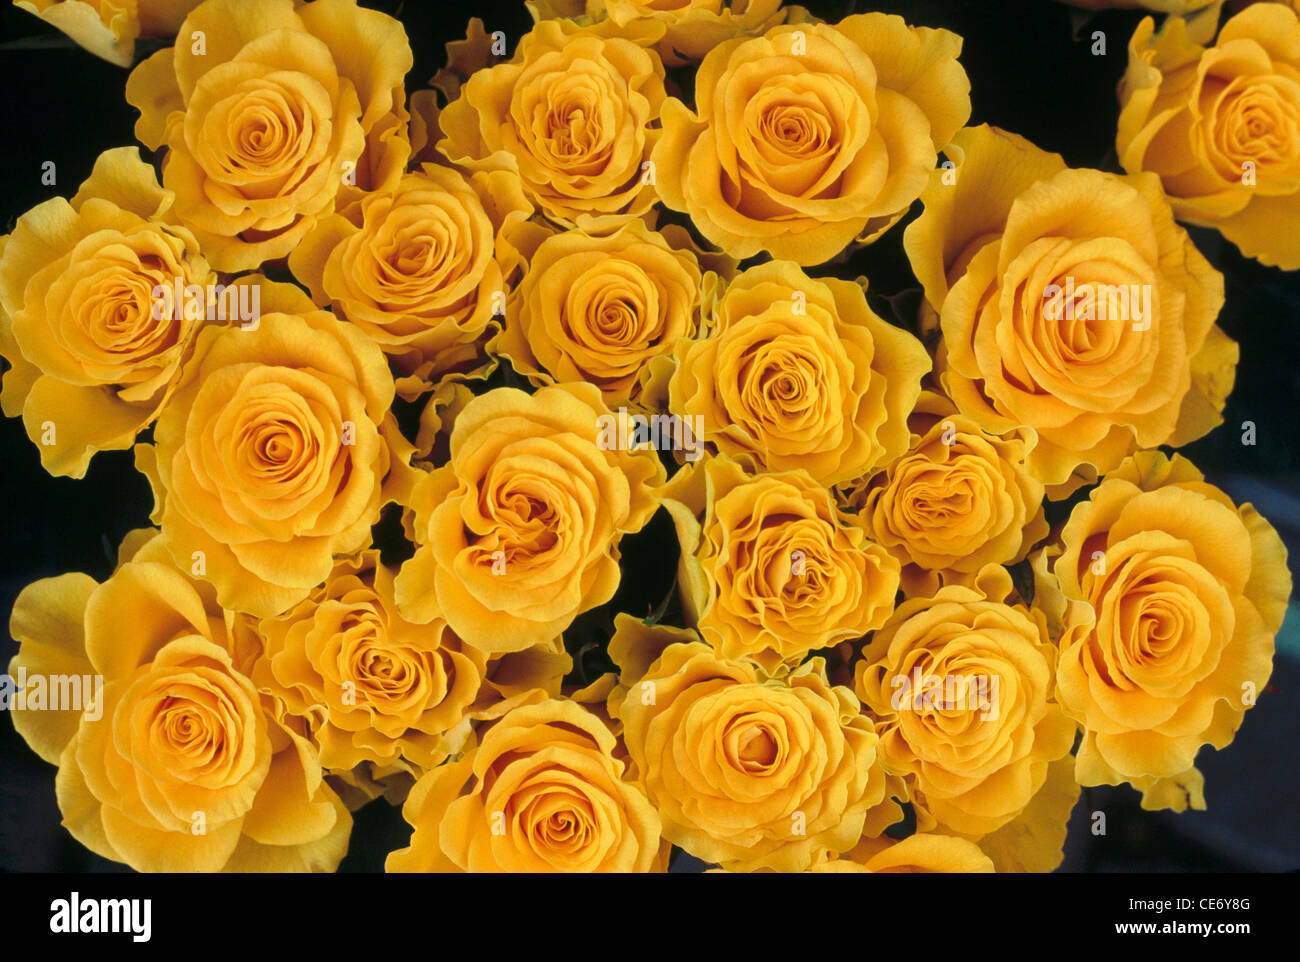 HMA 86305 : rose jaune fleurs bouquet de fleurs roses jaune vif de  l'arrangement Photo Stock - Alamy